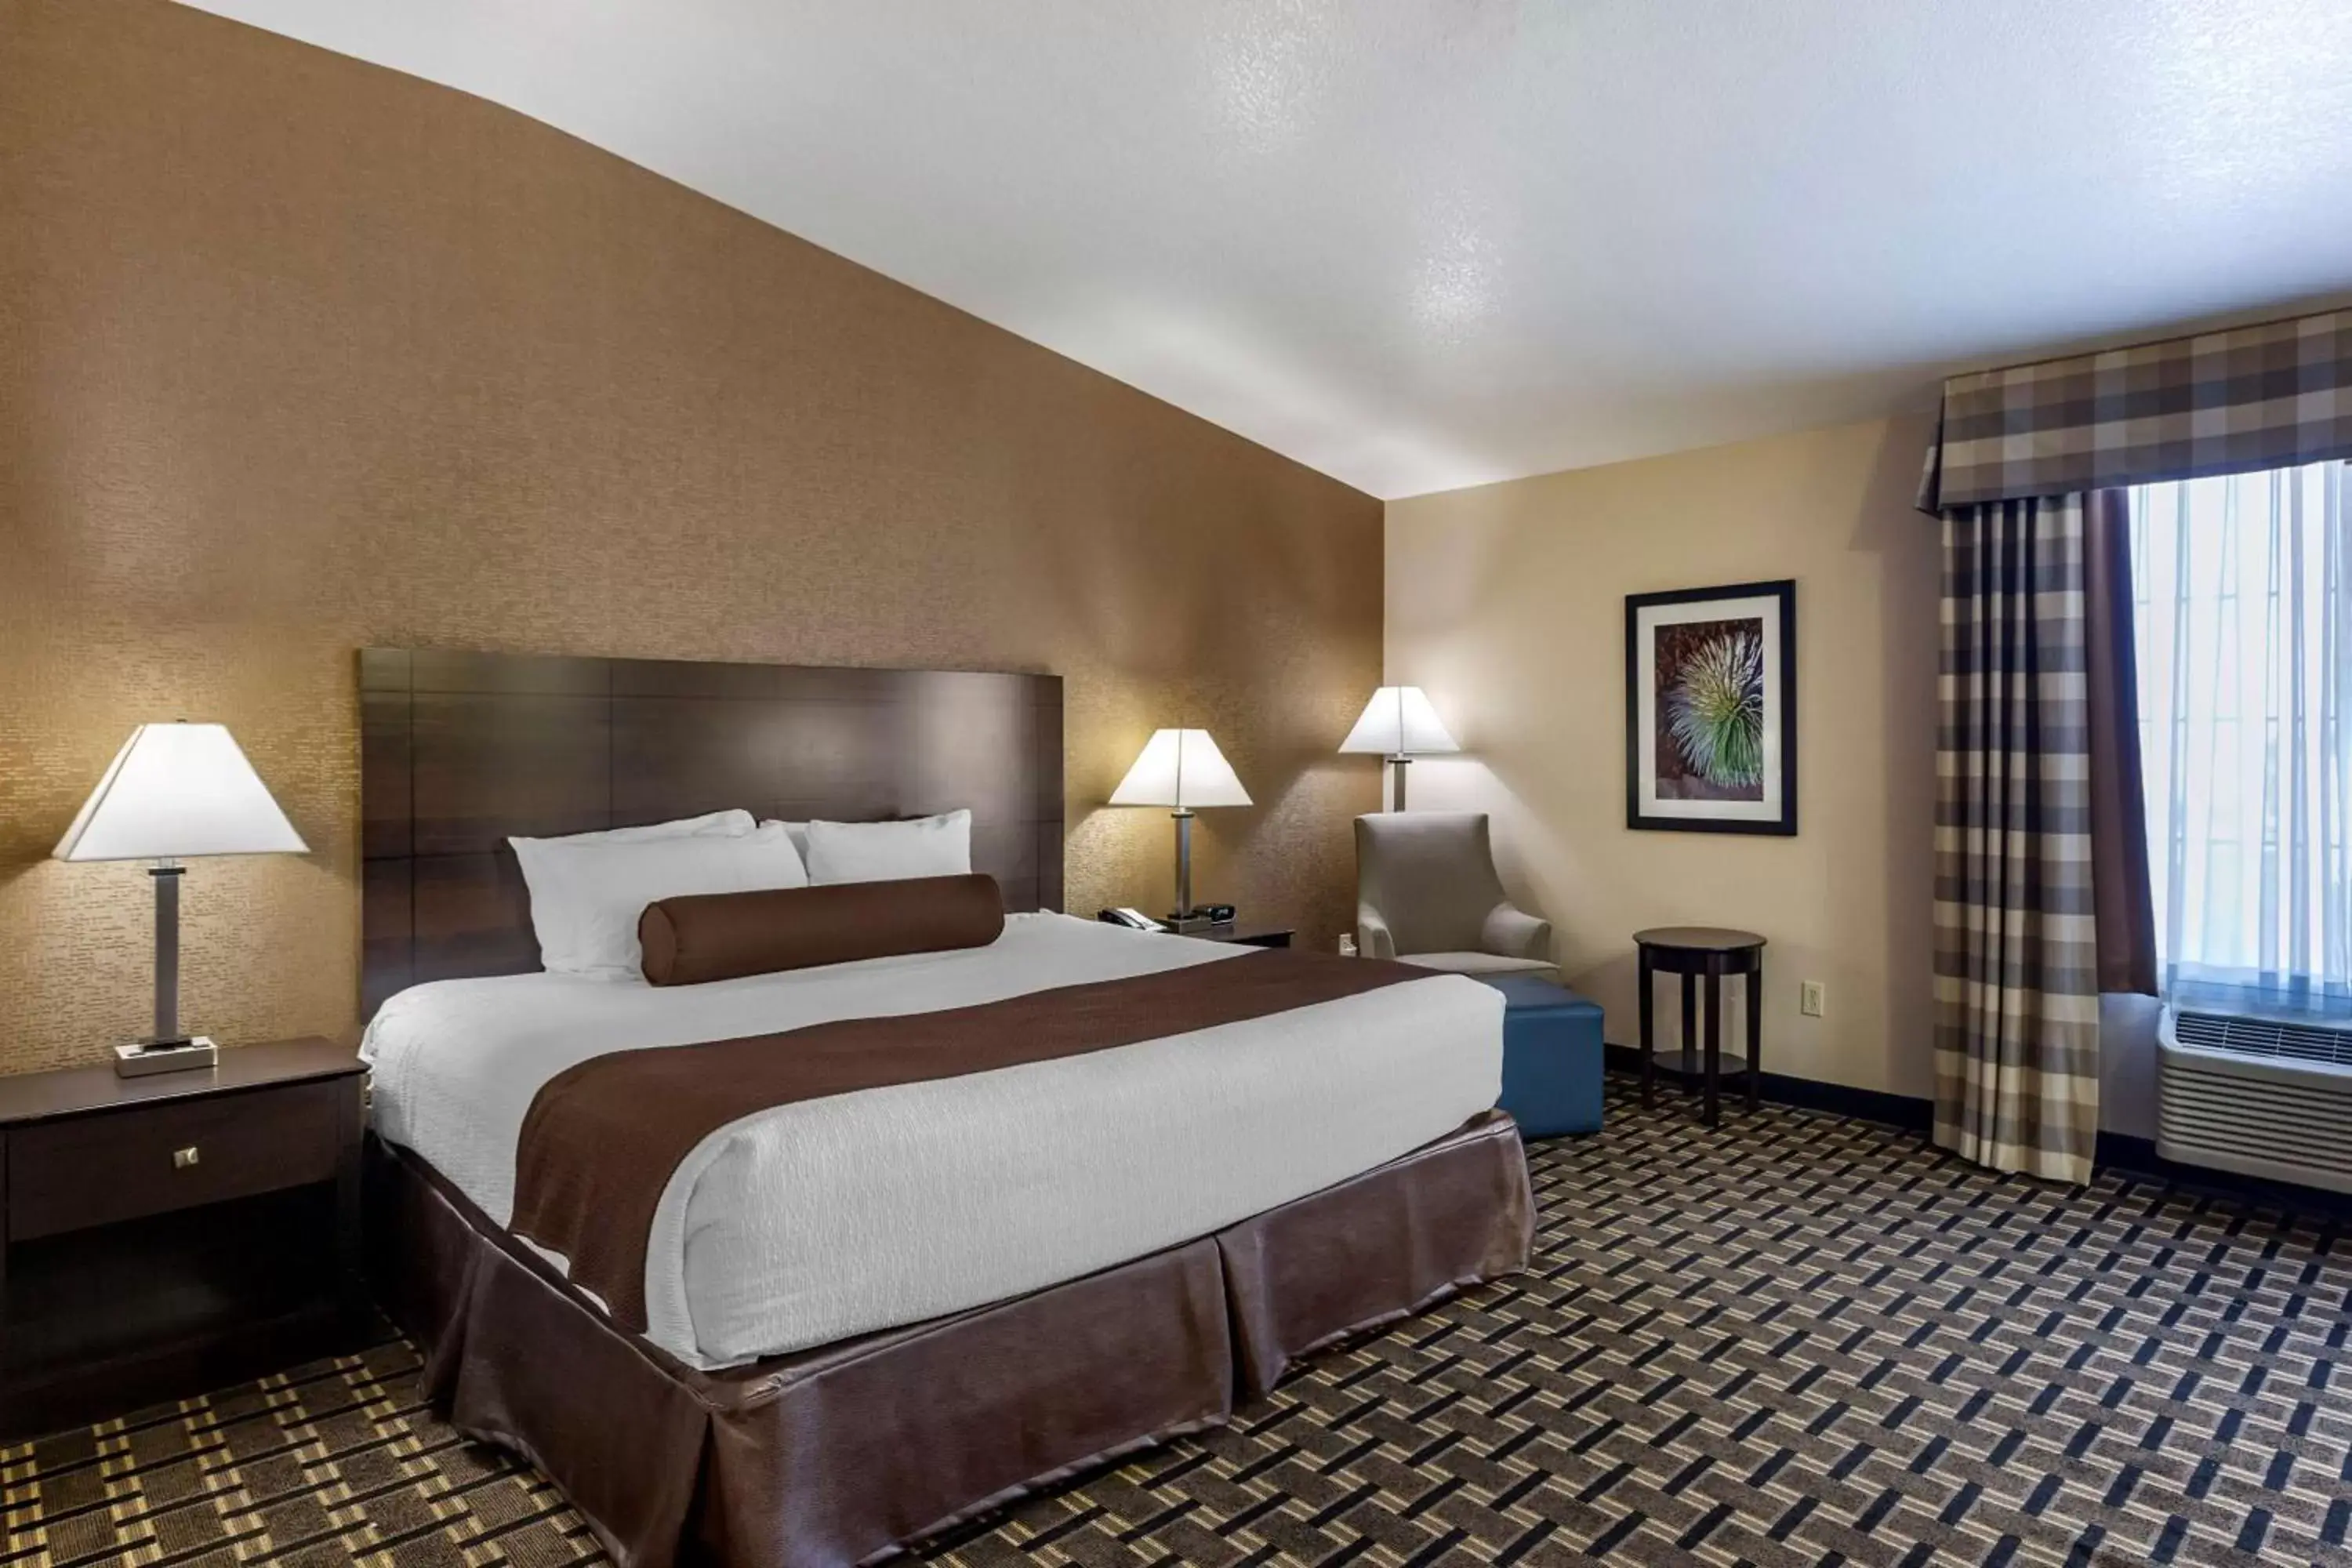 Bedroom, Bed in Best Western Plus Las Vegas West